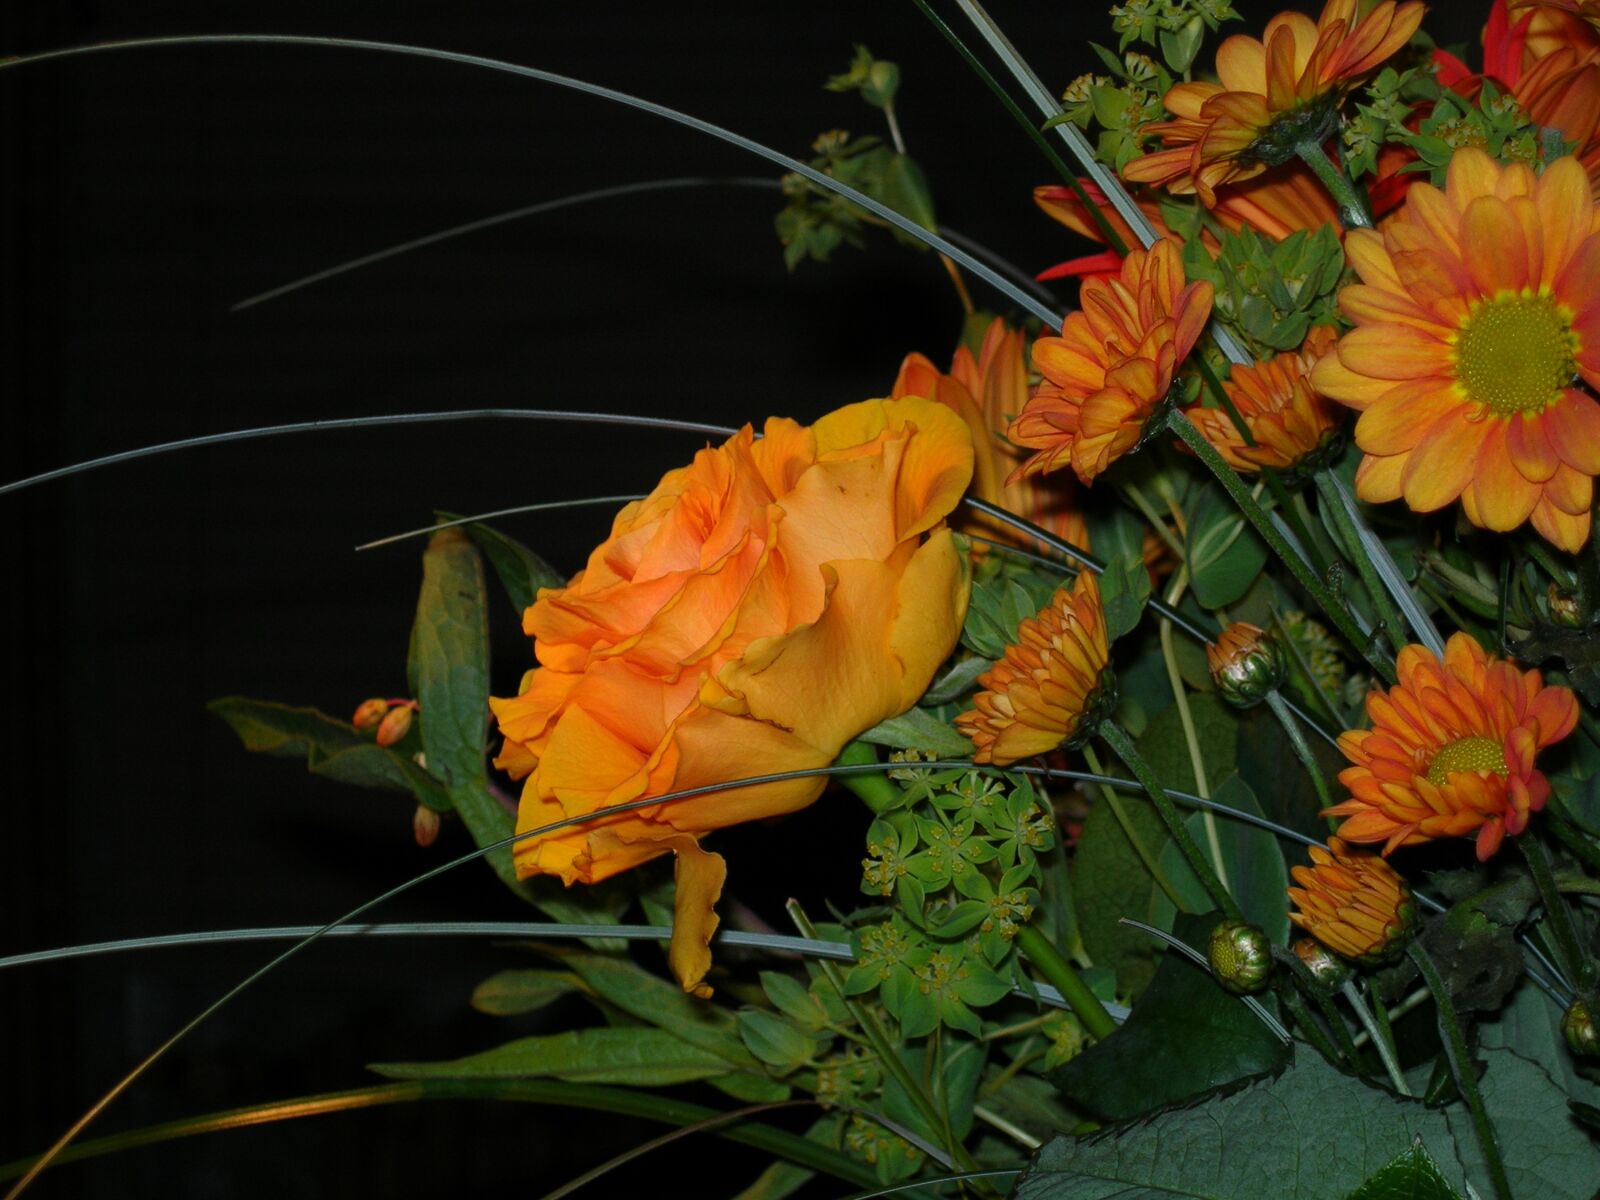 Nikon E5900 sample photo. Rose, cut flowers, fade photography